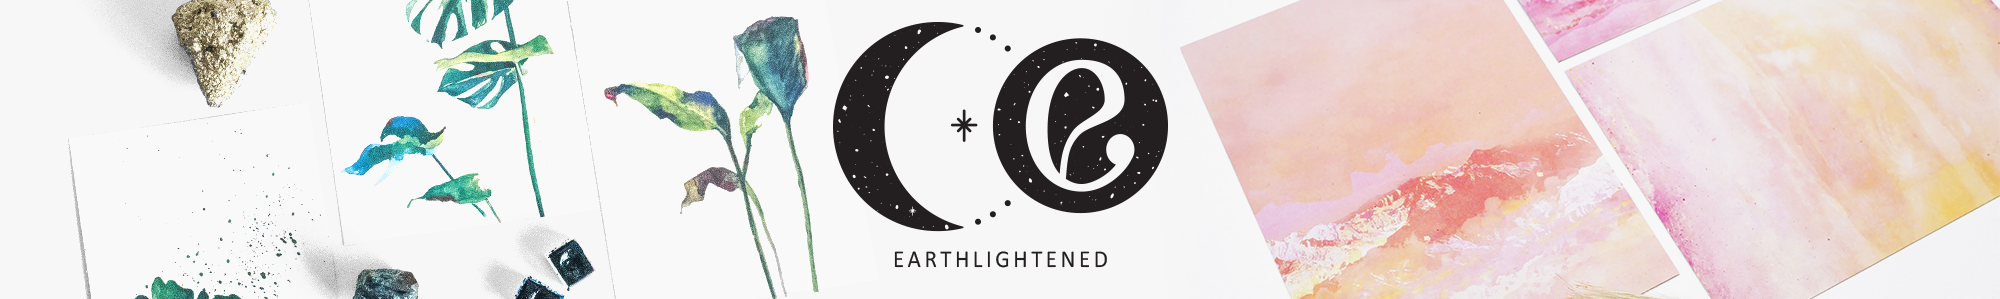 Earthlightened .'s profile banner